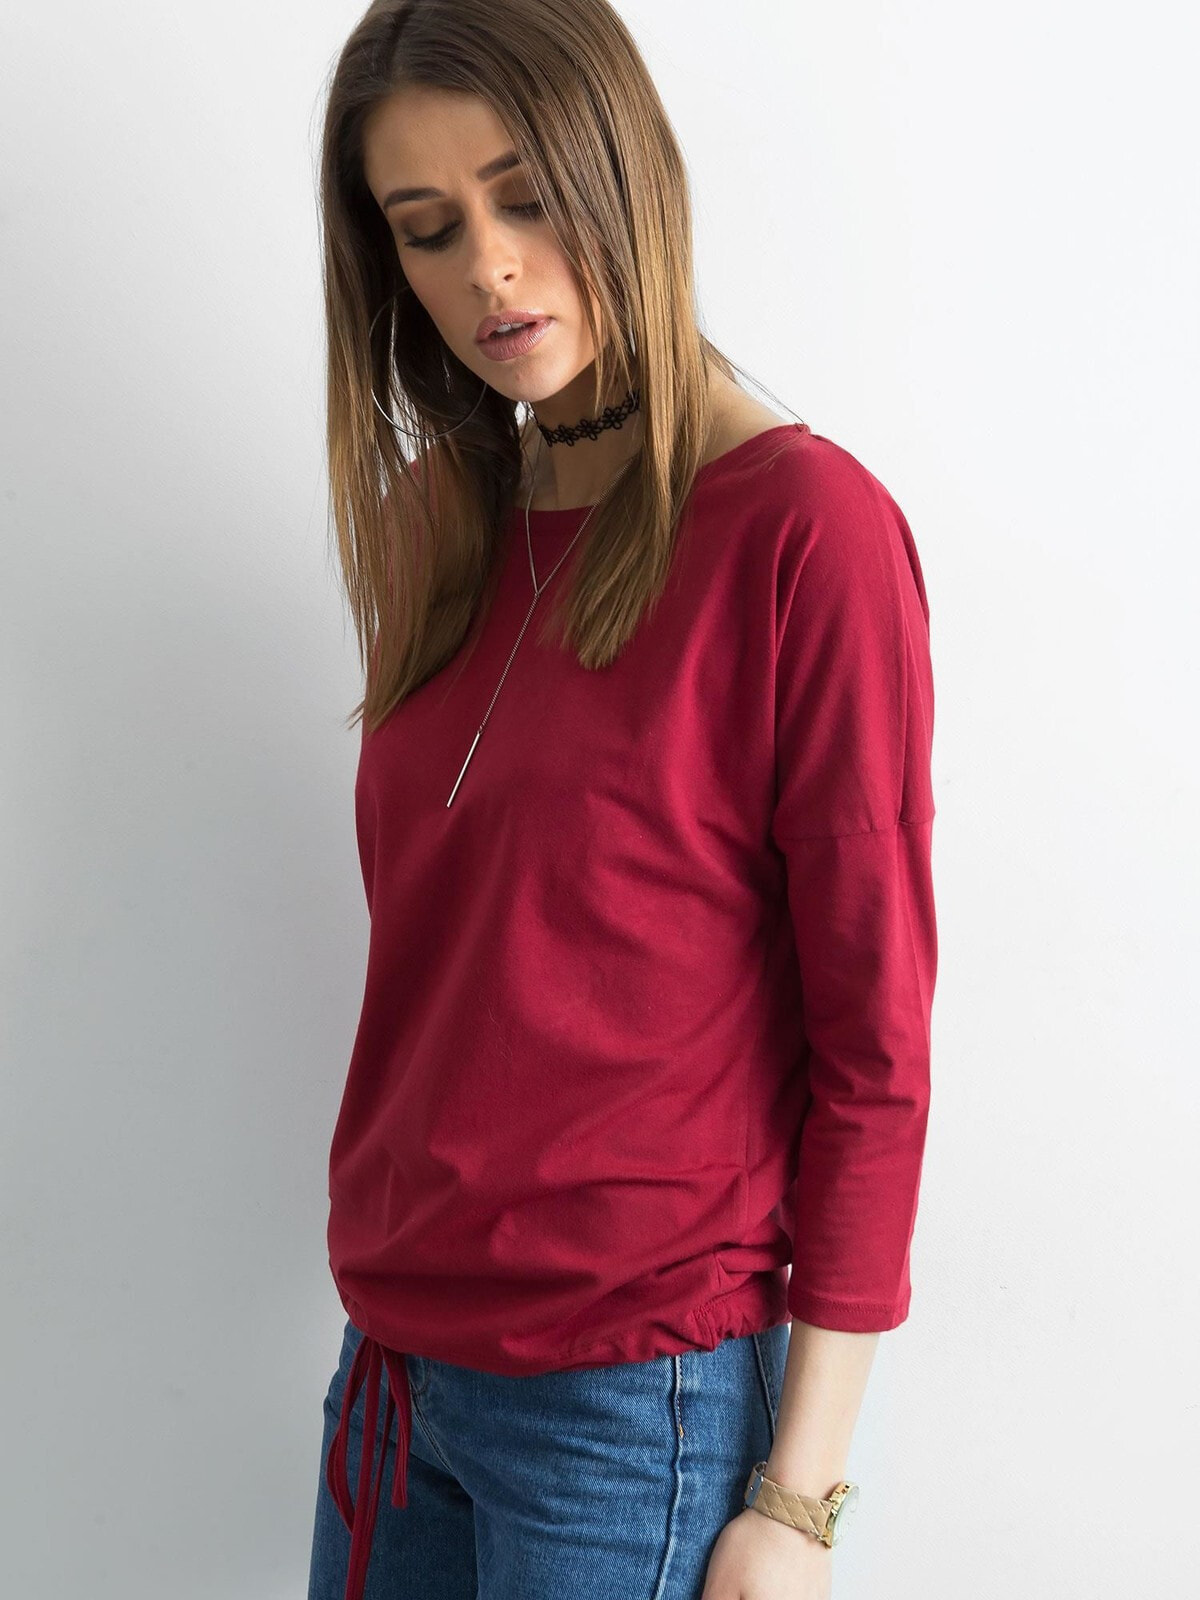 Женская блузка приталенного кроя на завязках - красная Factory Price